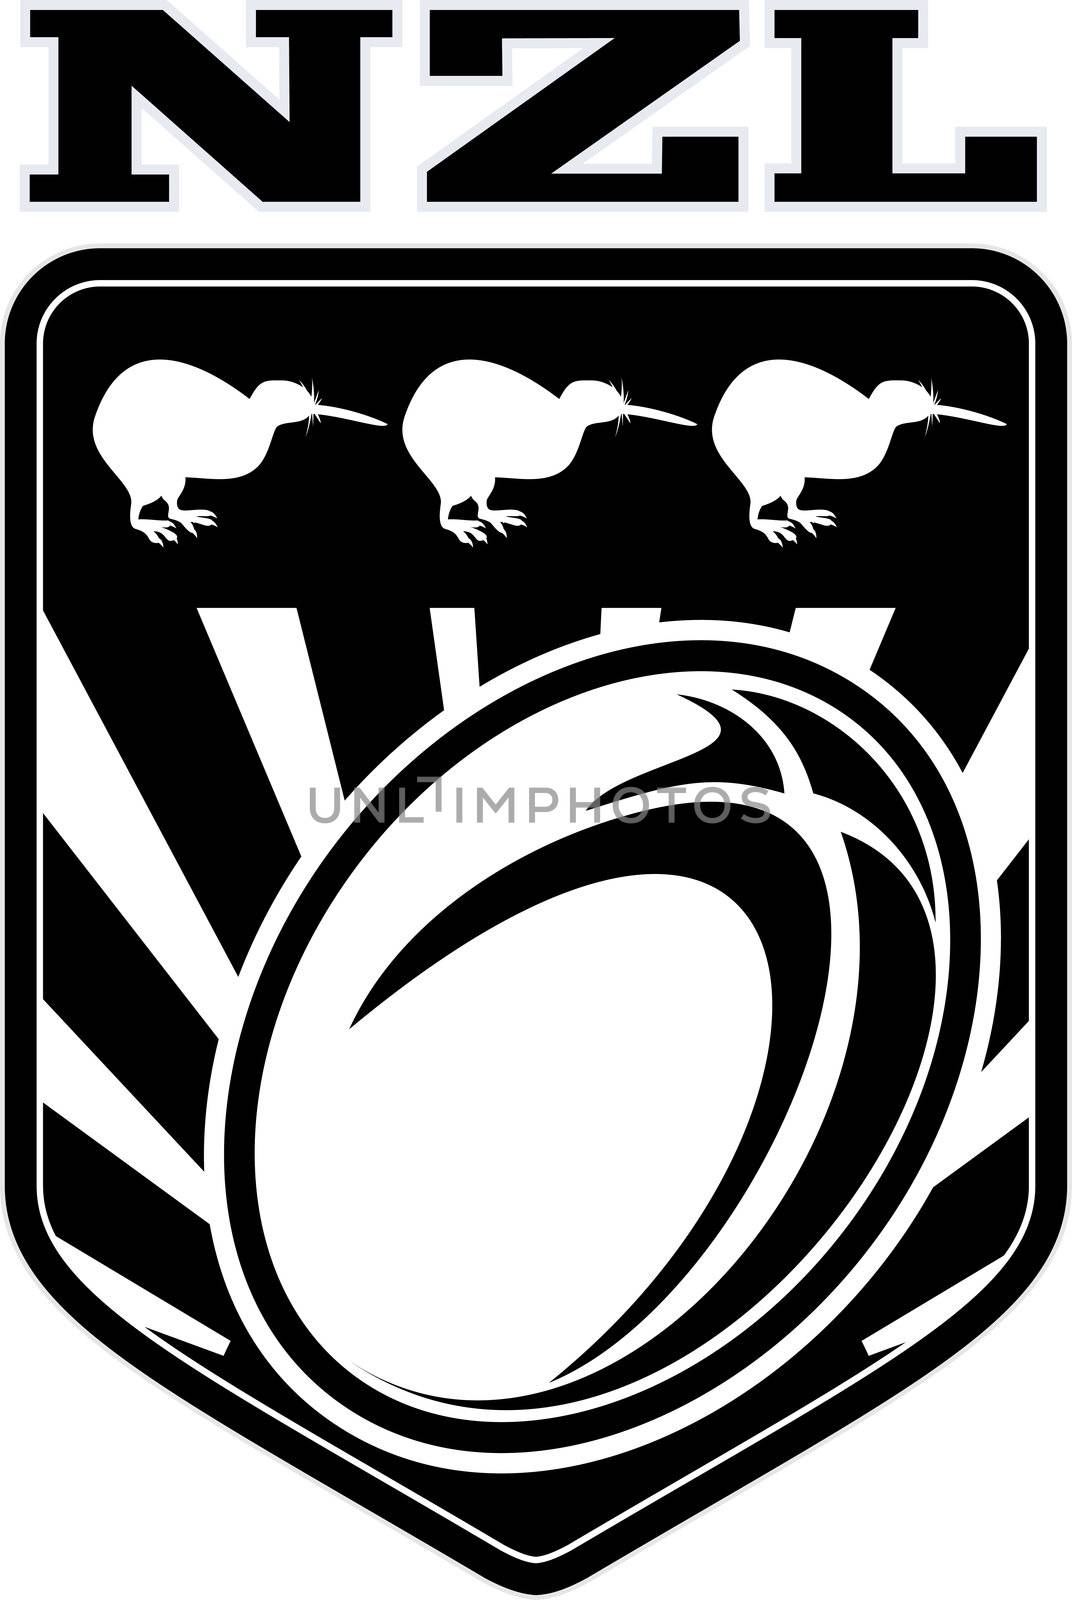 new zealand kiwi rugby league shield by patrimonio